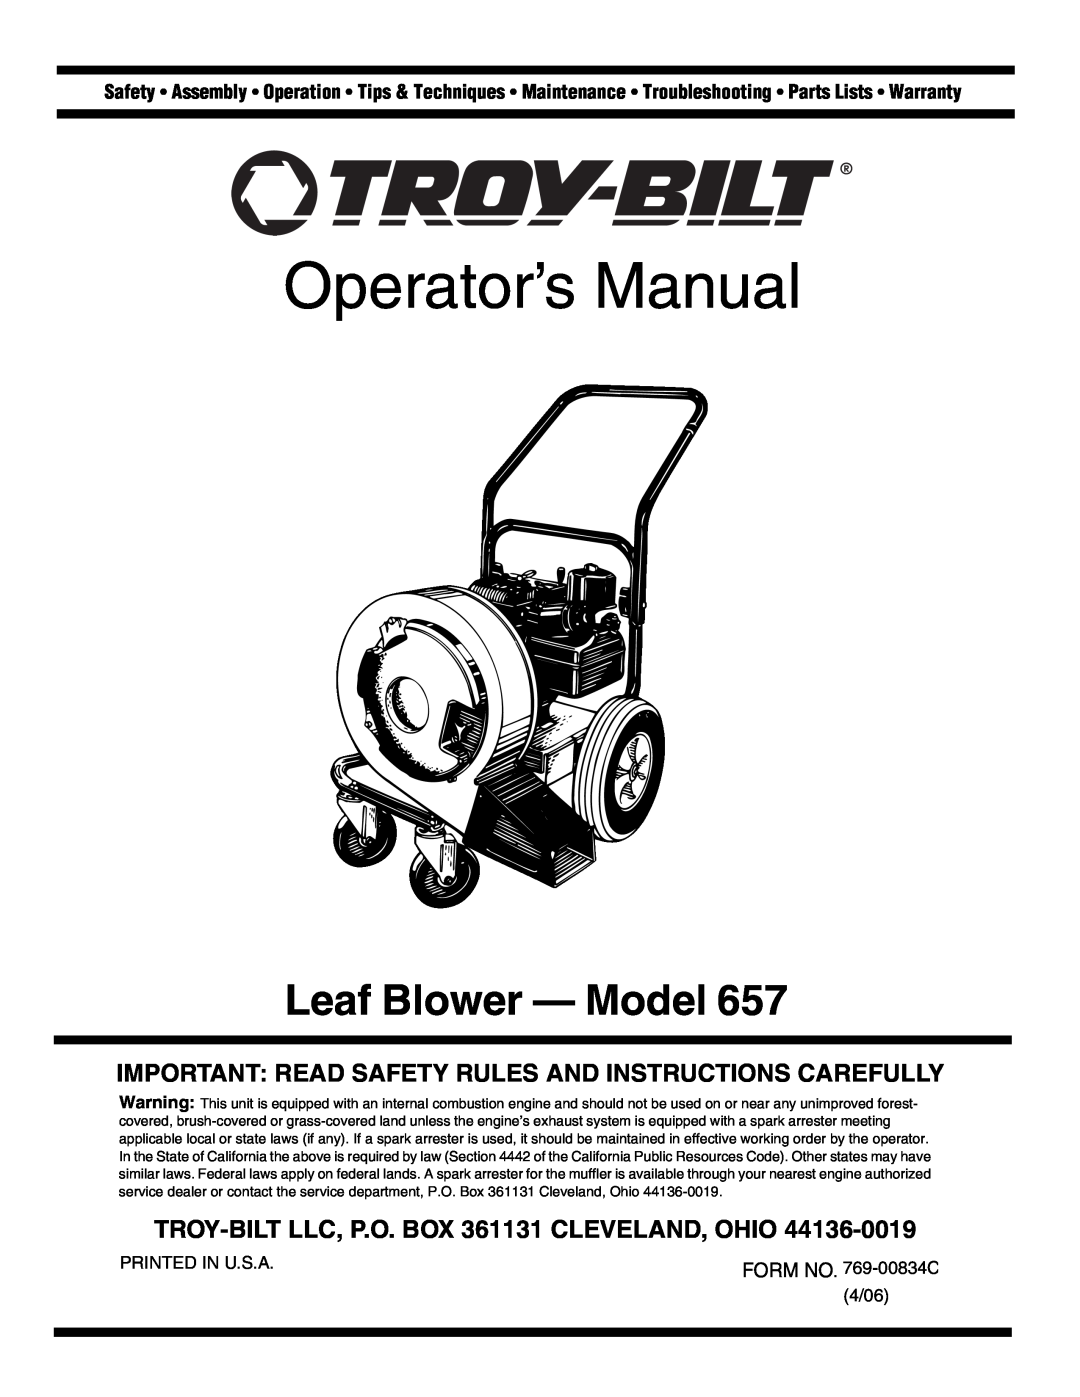 Troy-Bilt 657 warranty Operator’s Manual, Leaf Blower - Model, TROY-BILTLLC, P.O. BOX 361131 CLEVELAND, OHIO 